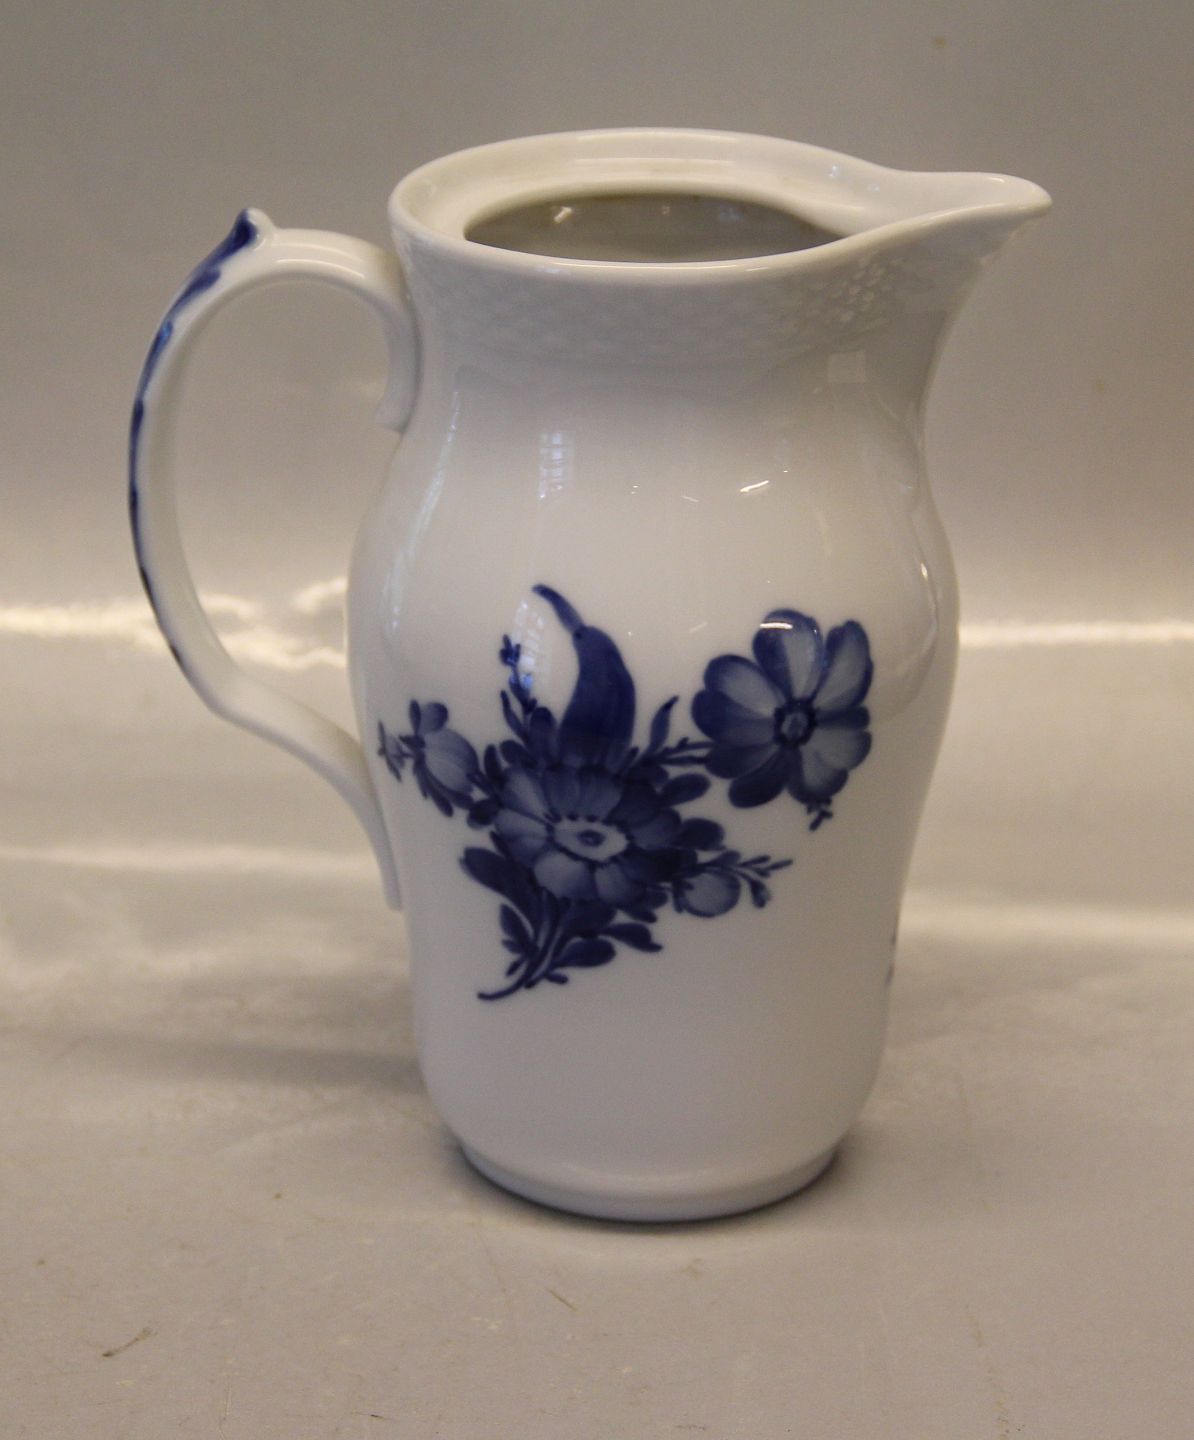 Klosterkælderen - Danish Porcelain Blue Flower braided Tableware 8145-10  Pitcher 17.5 cm - Danish Porcelain Blue Flower braided Tableware 8145-10  Pitcher 17.5 cm